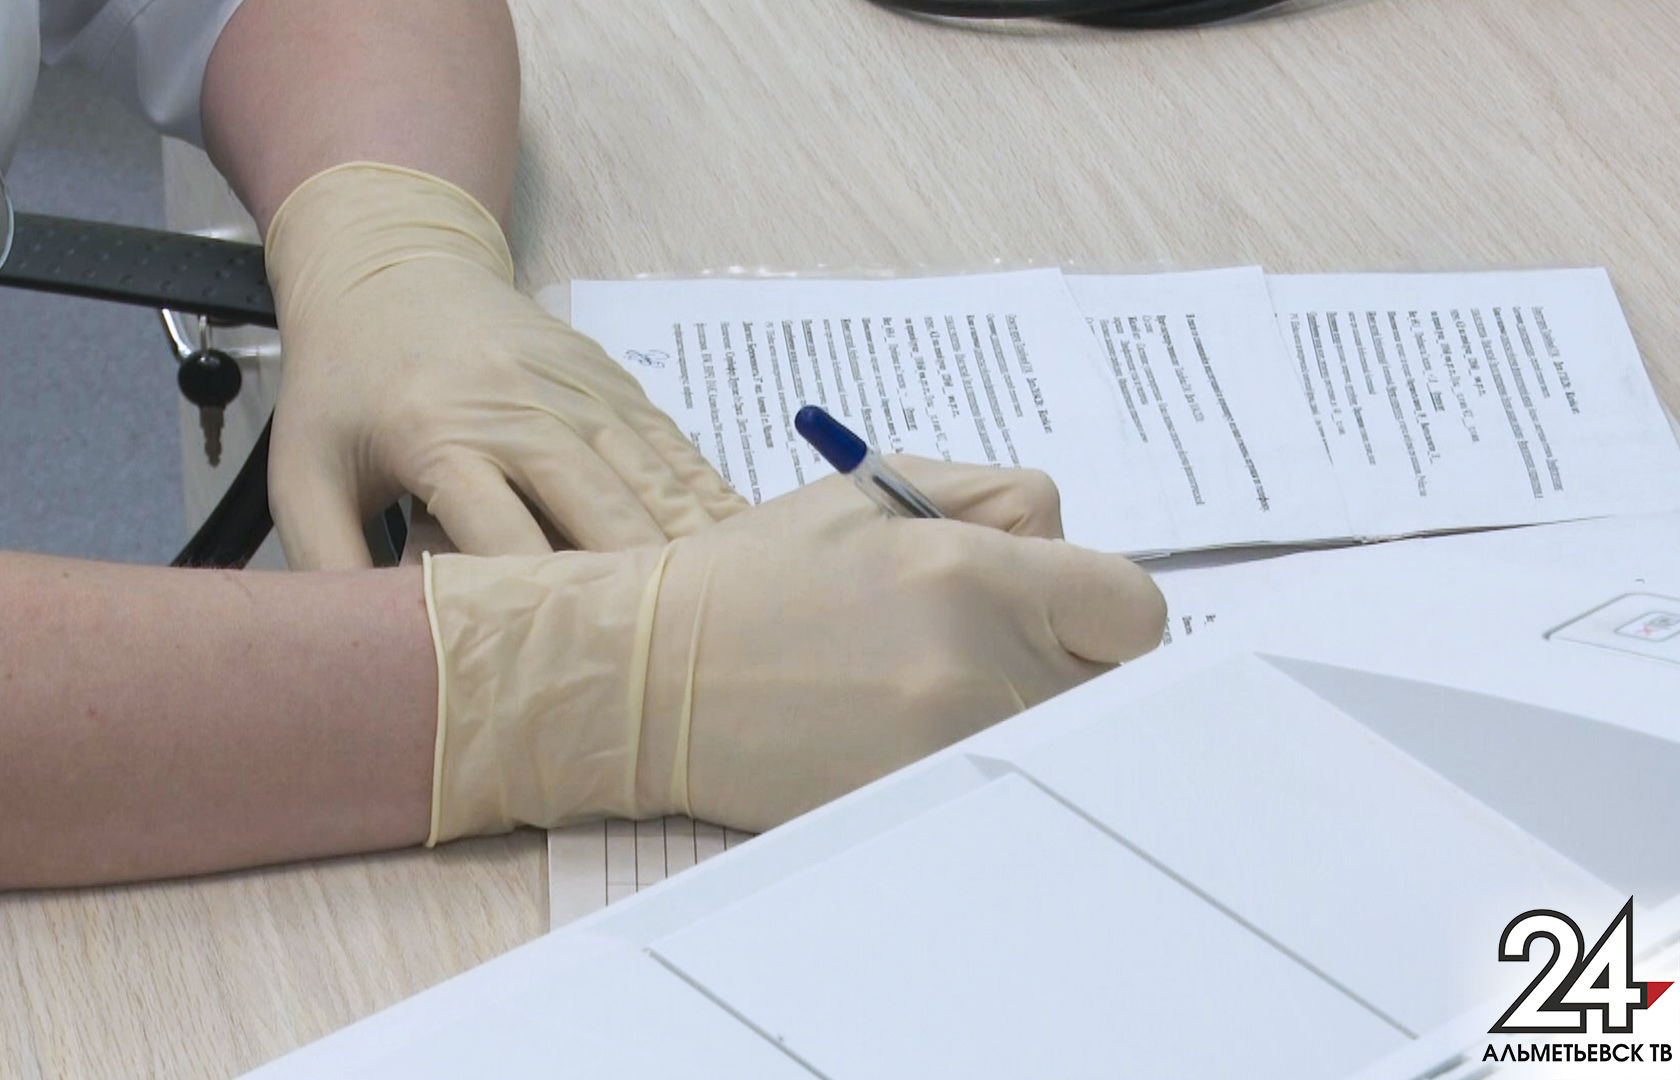 За минувший день в Татарстане зарегистрирован 21 новый случай коронавируса